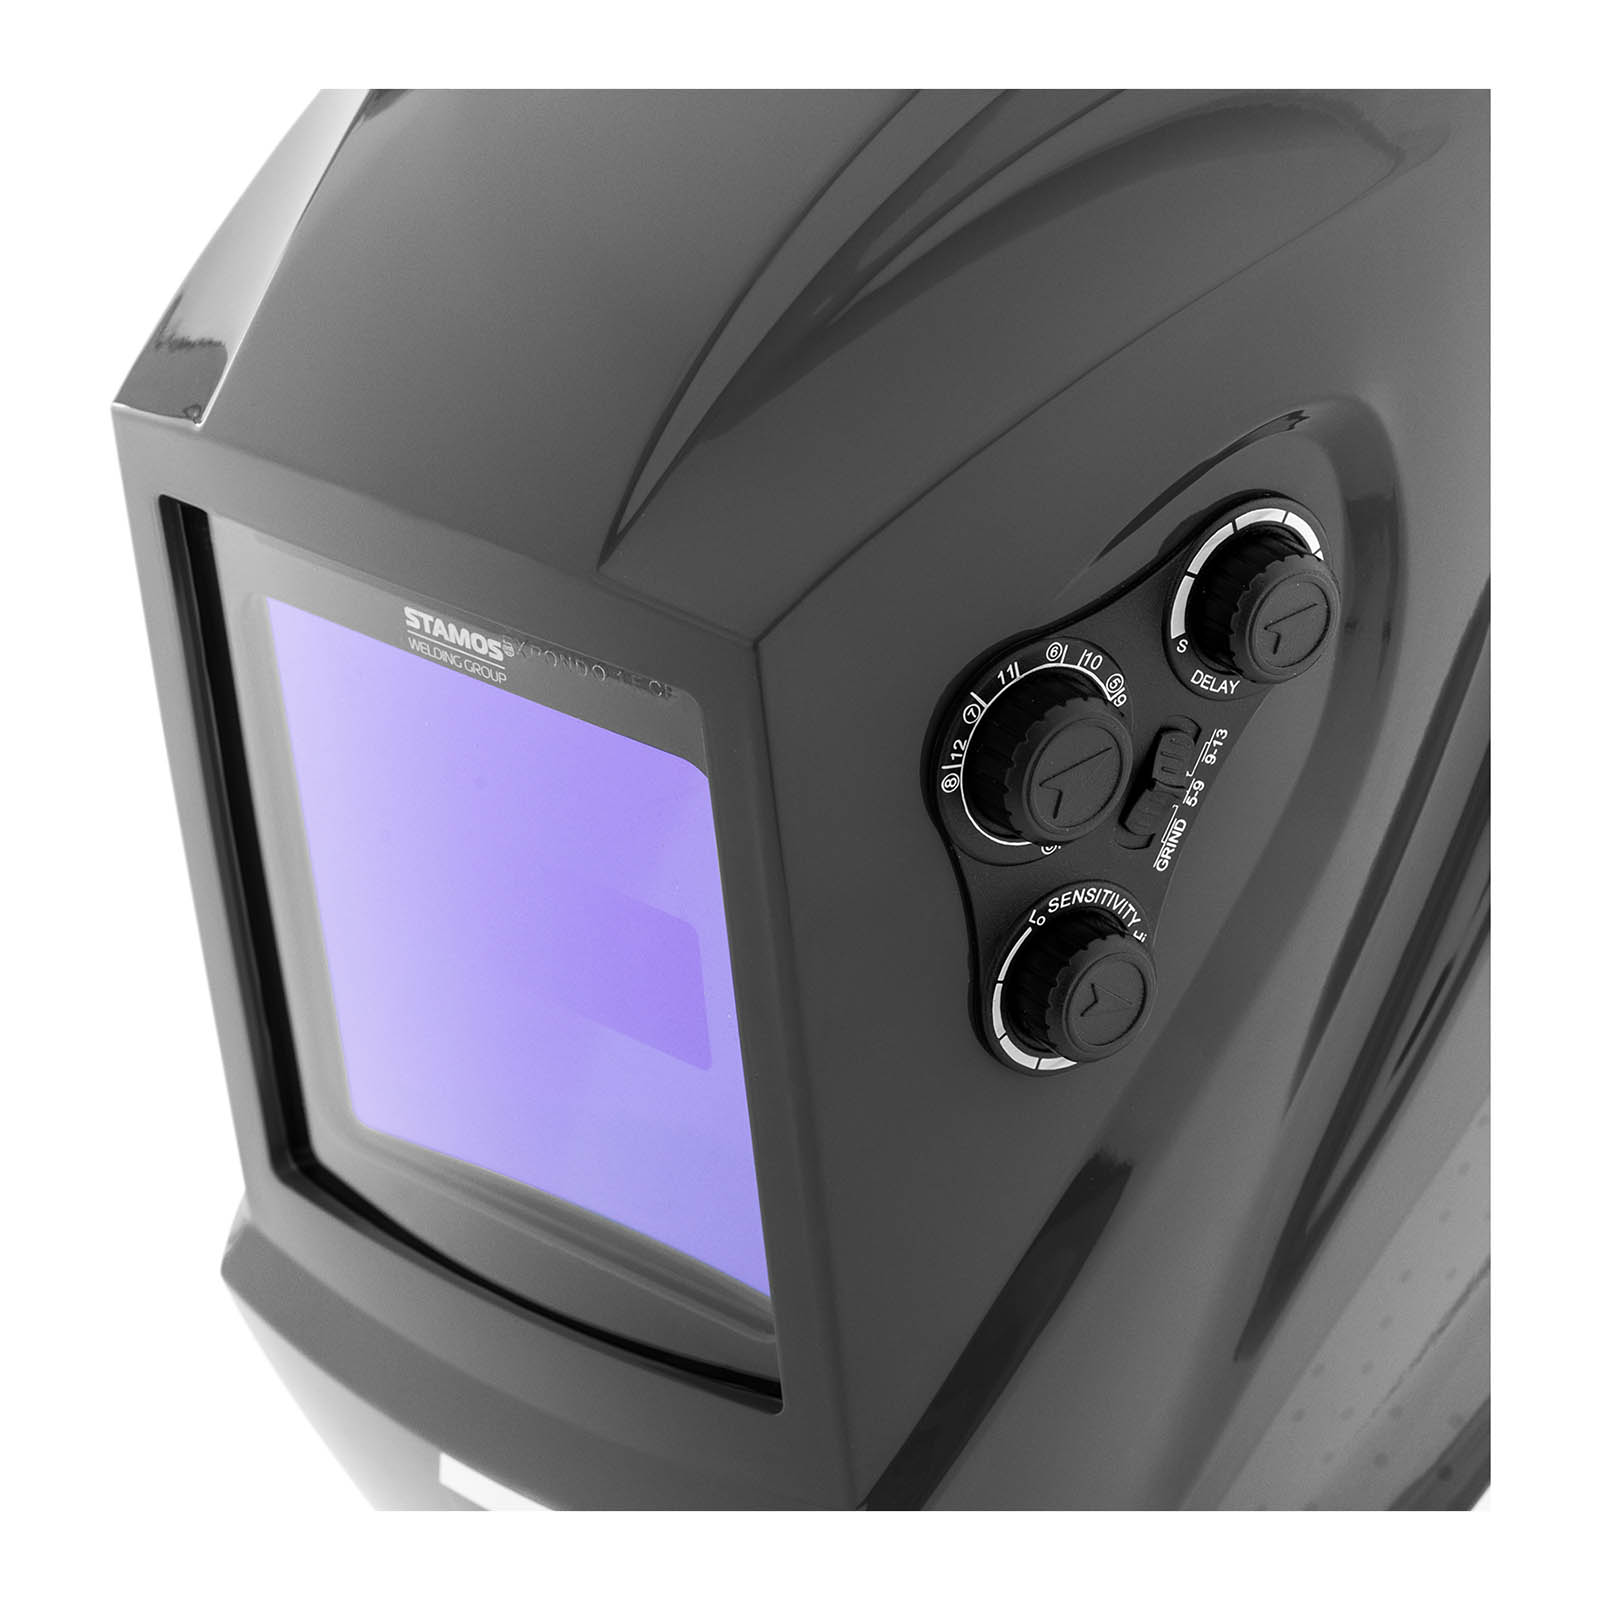 Maschera da saldatore - COLOUR GLASS X-100B - Campo visivo colorato